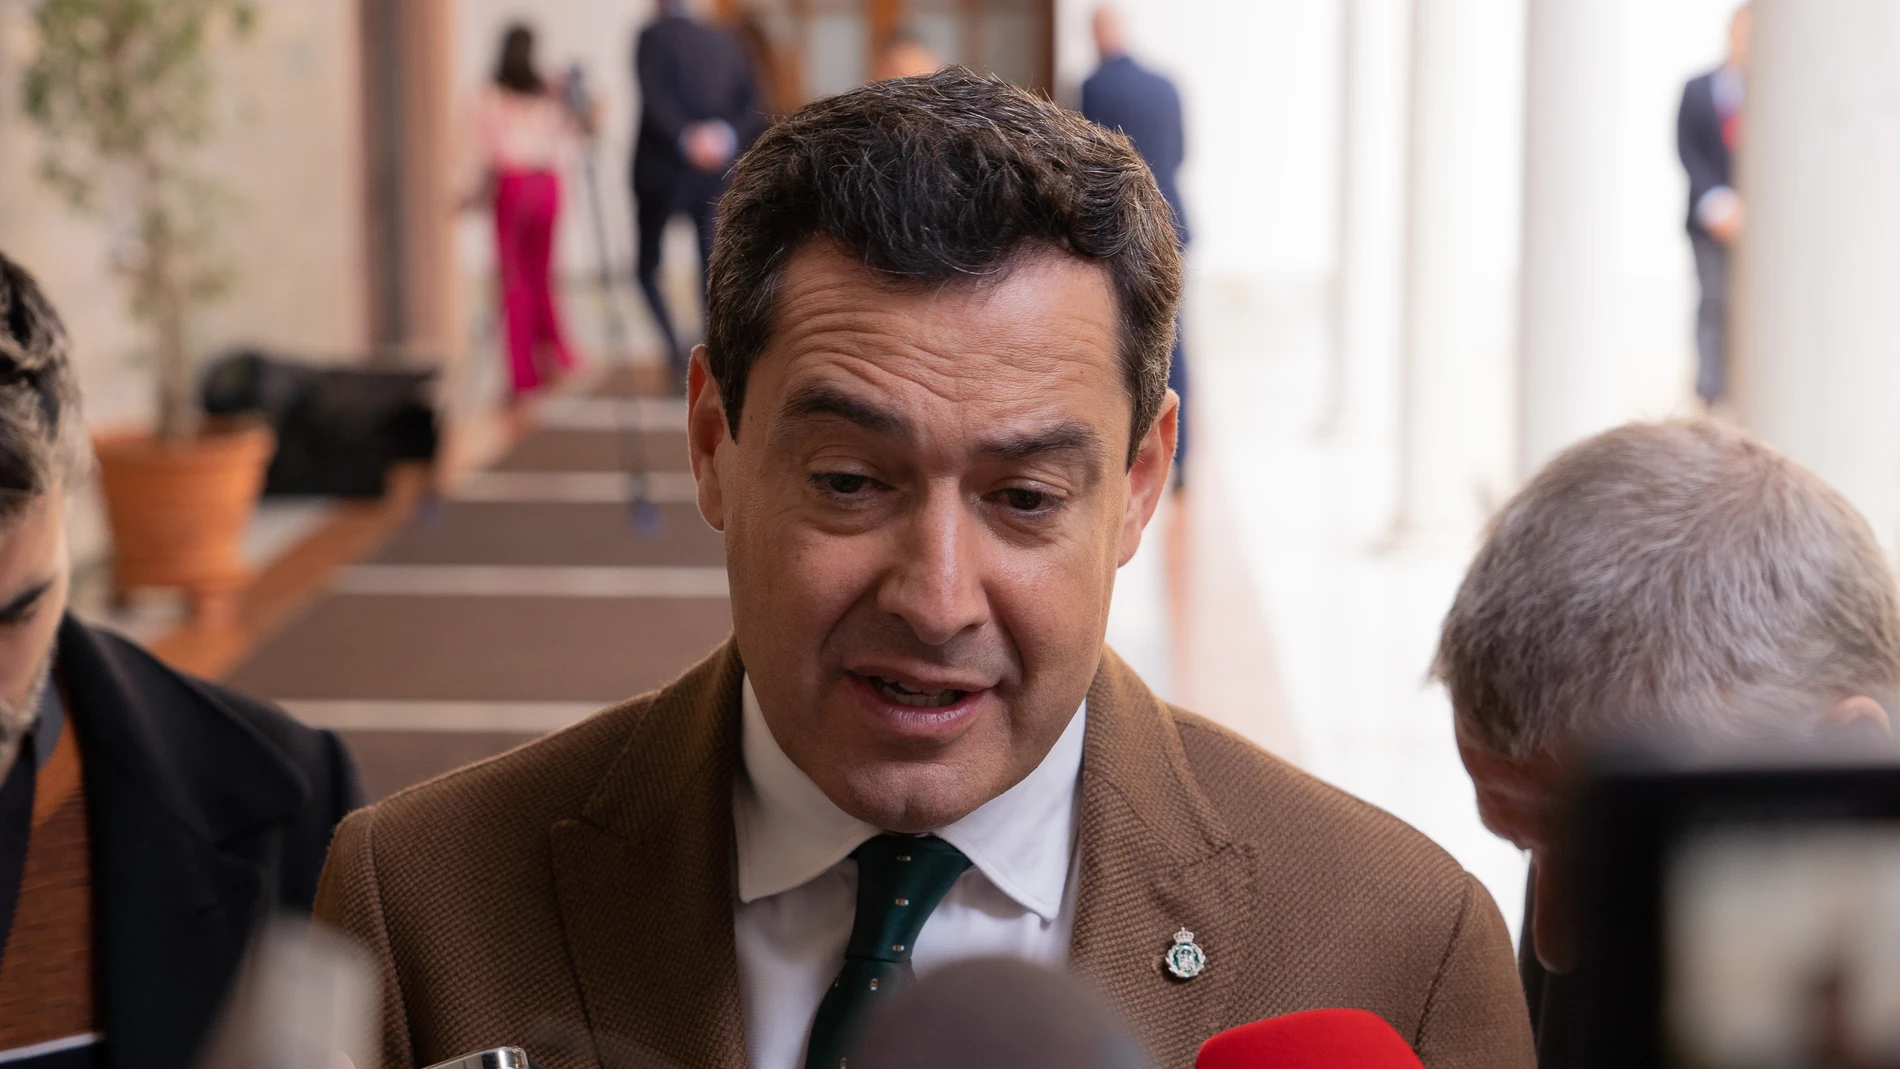 El PP confía en el origen "lícito y legal" del patrimonio de la alcaldesa de Marbella, en medio de un posible caso de corrupción